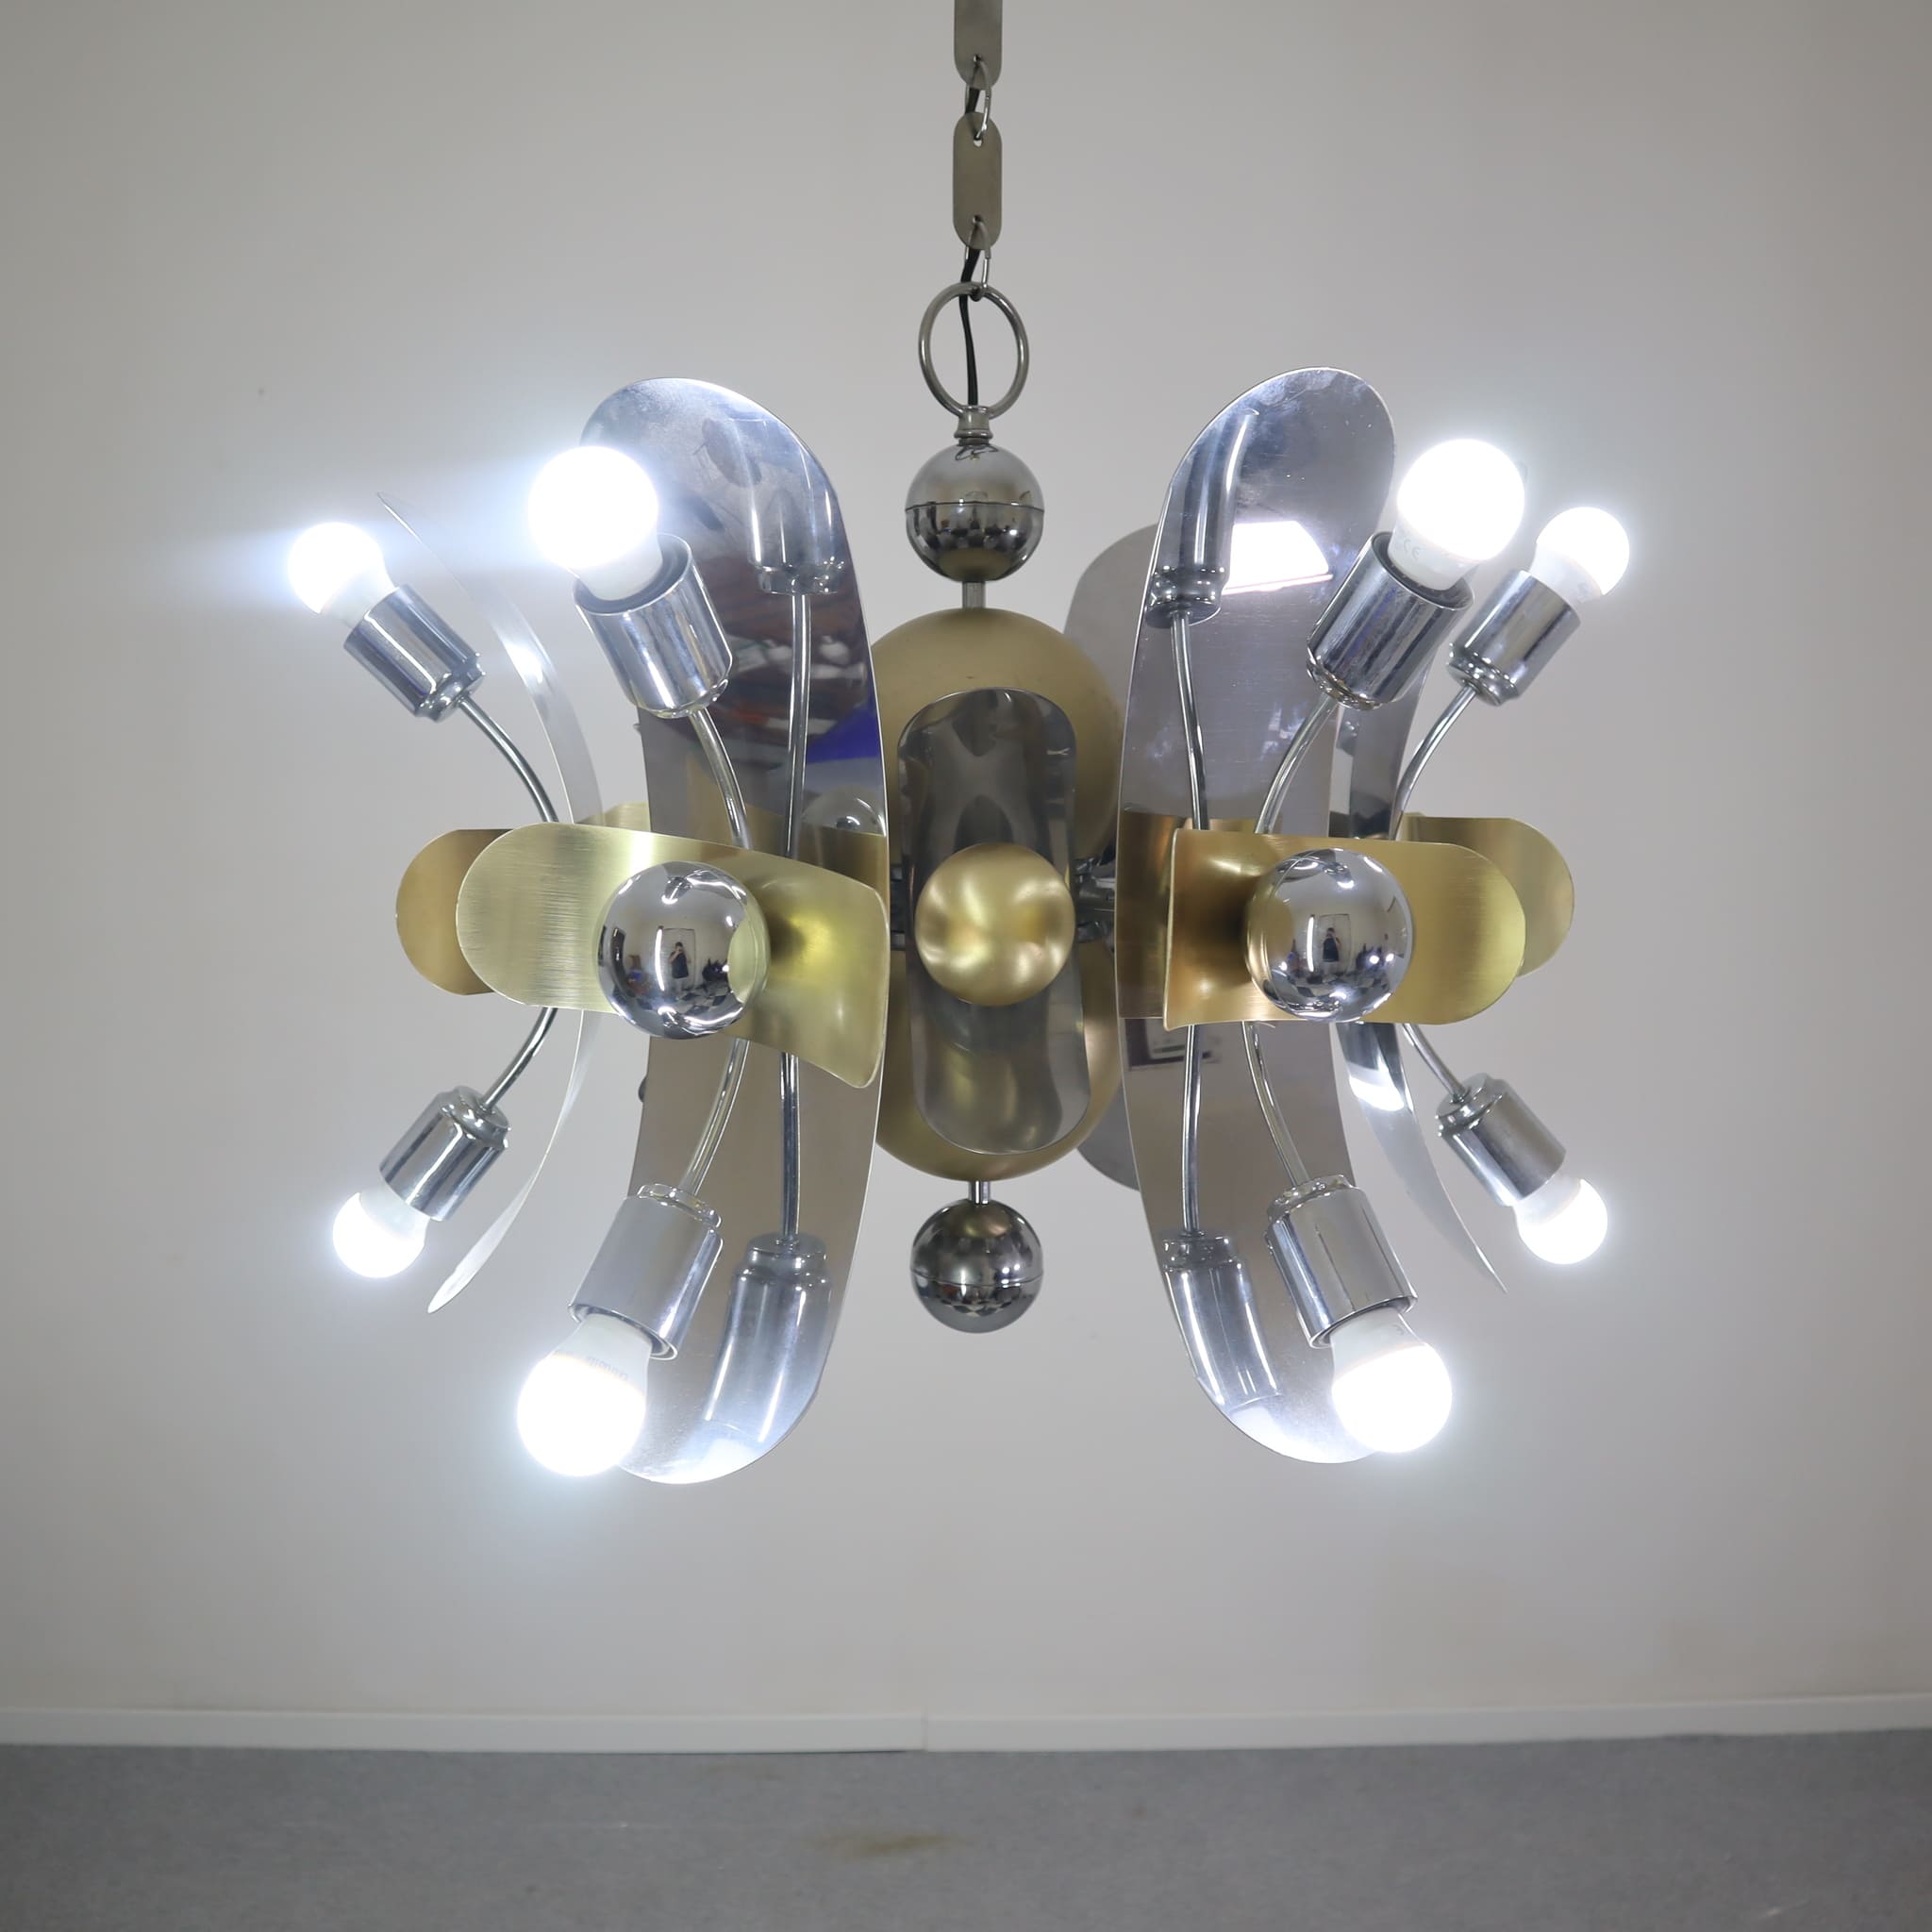 visionidepoca-visioni-depoca-steel-brass-chandelier-space-age-70s-12-lights-lighting-furniture-design-vintage-modern-made-italy-4